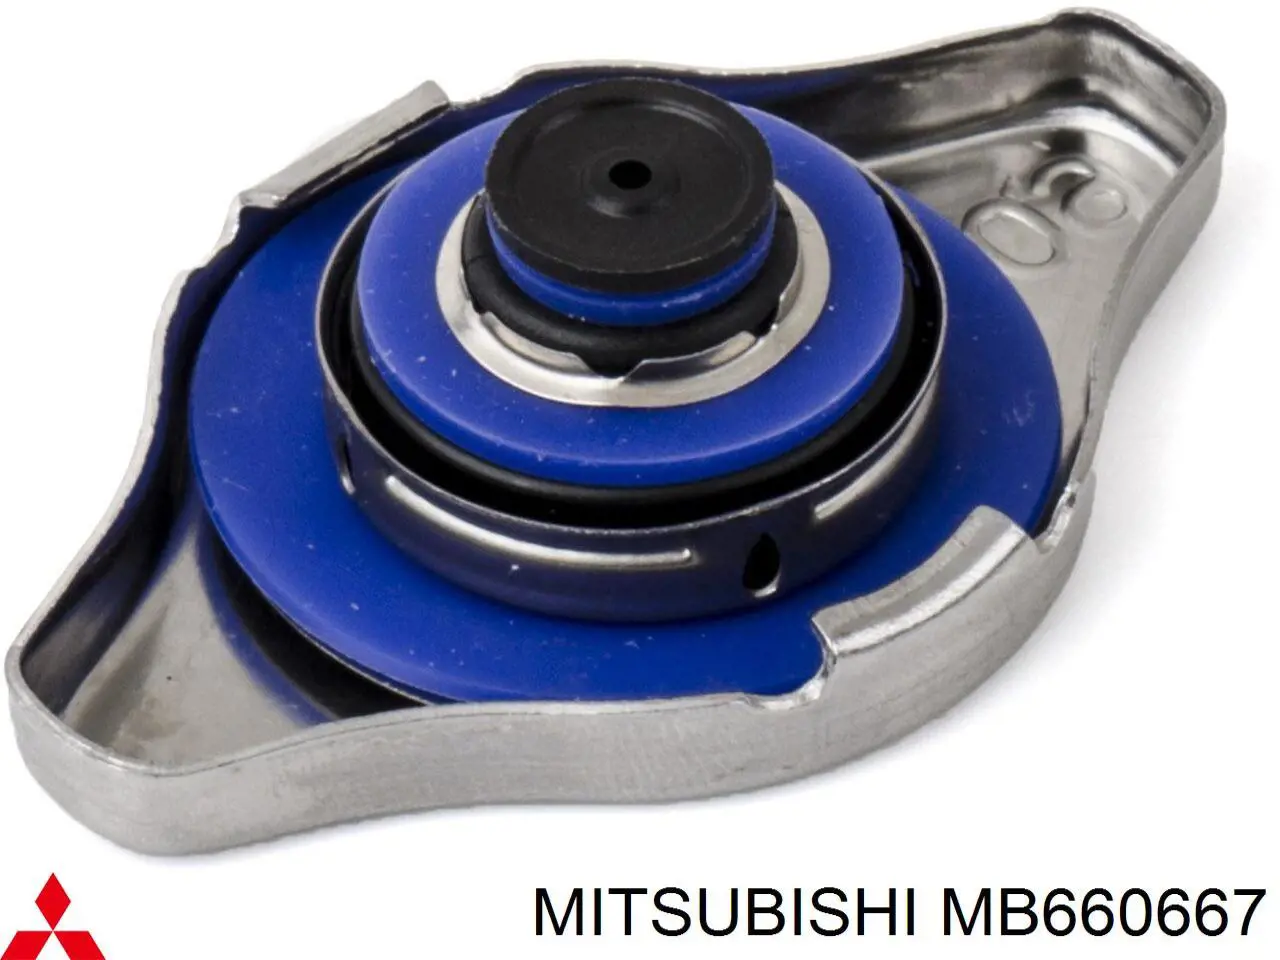 MB660667 Mitsubishi tapa radiador